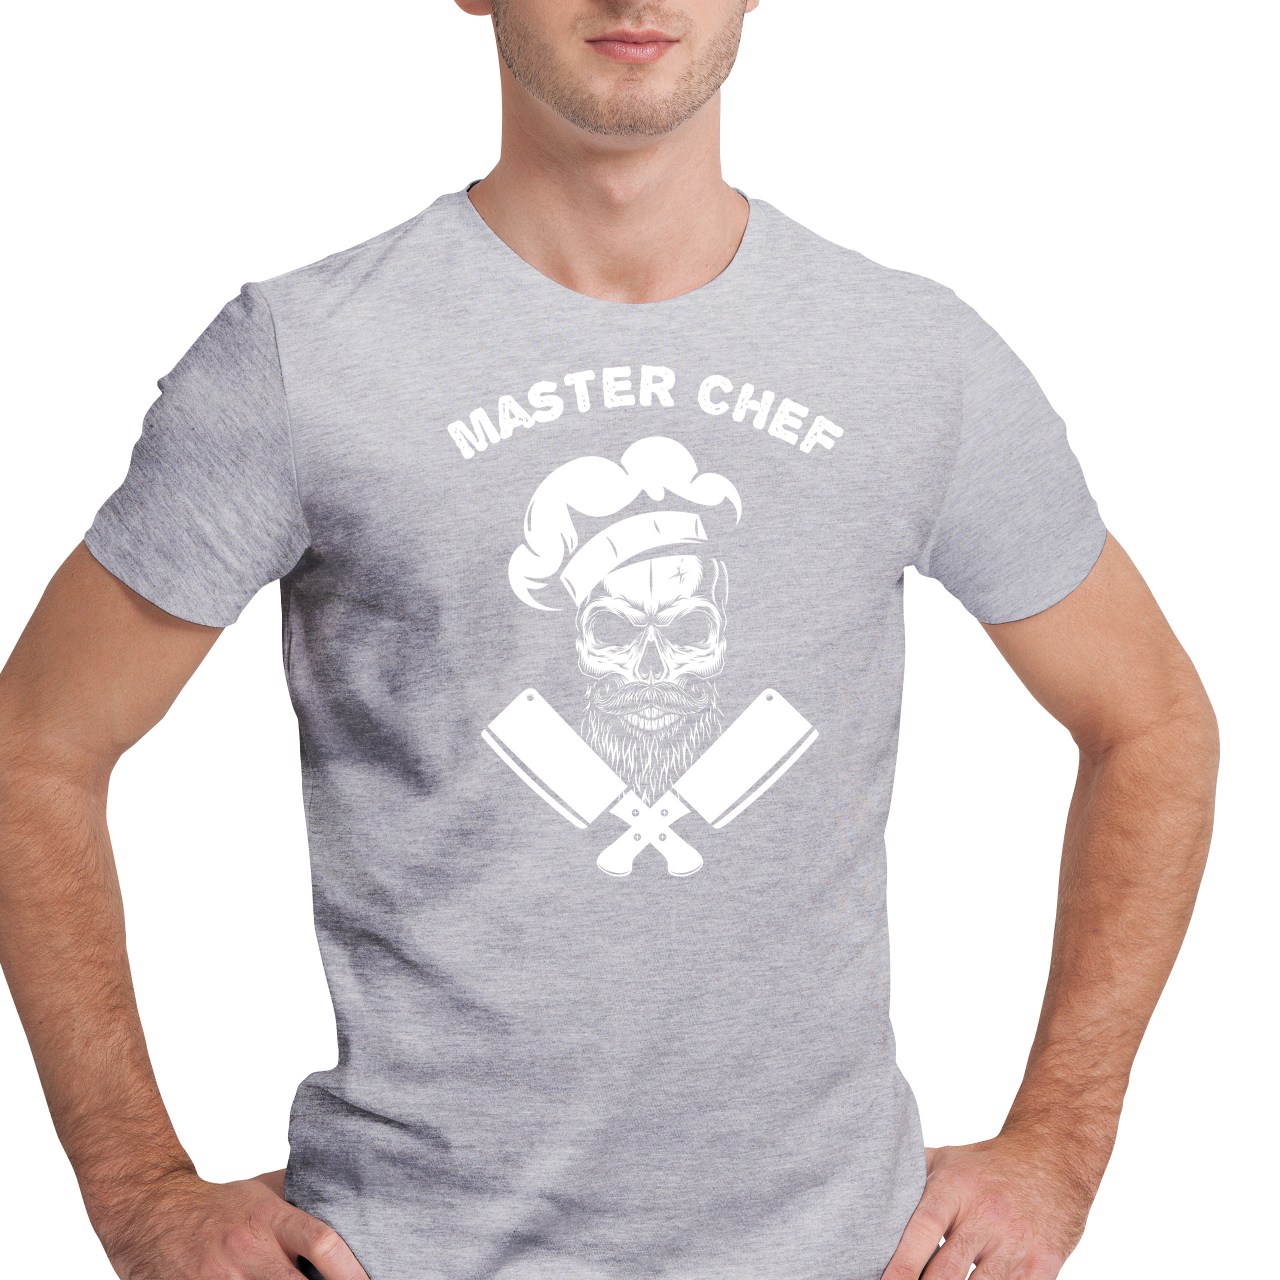 Pánské tričko s potiskem "Master Chef"